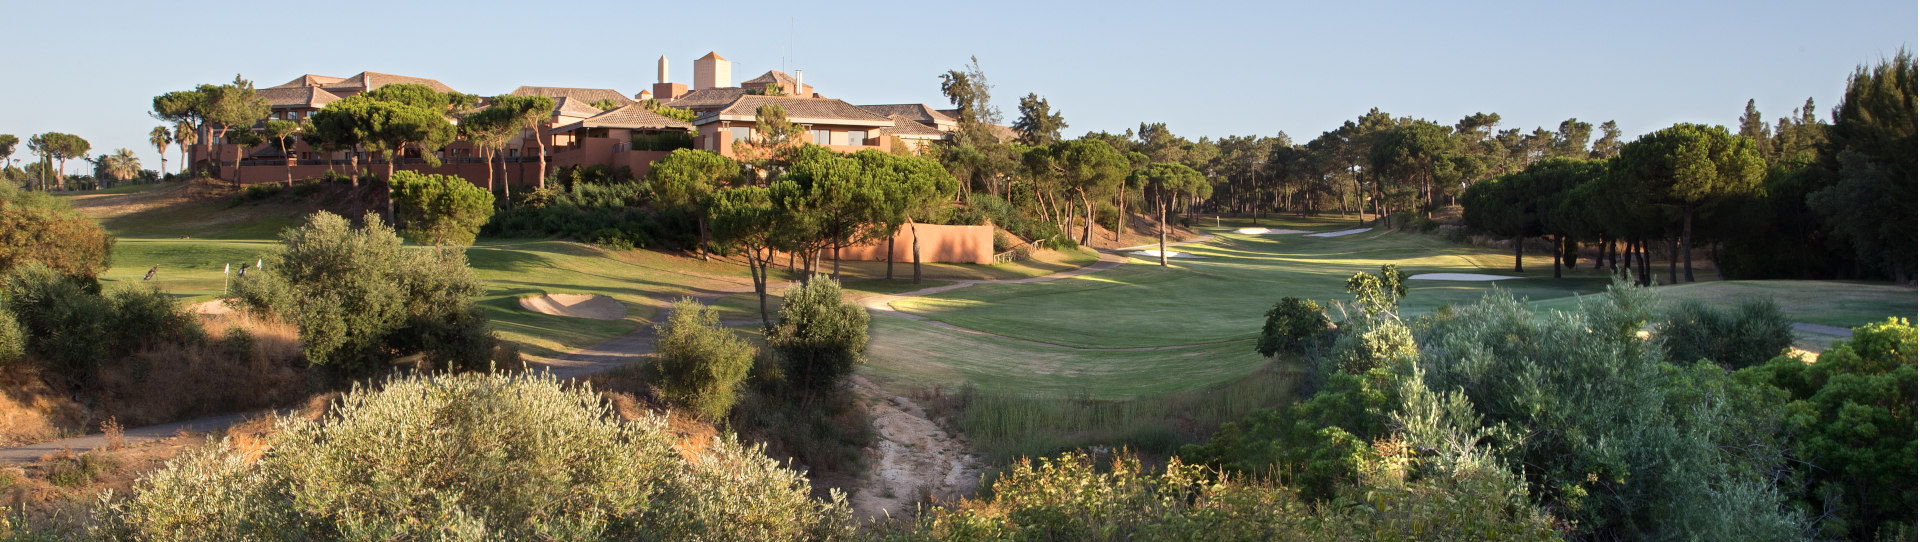 Spain golf courses - Islantilla Golf Course - Photo 3